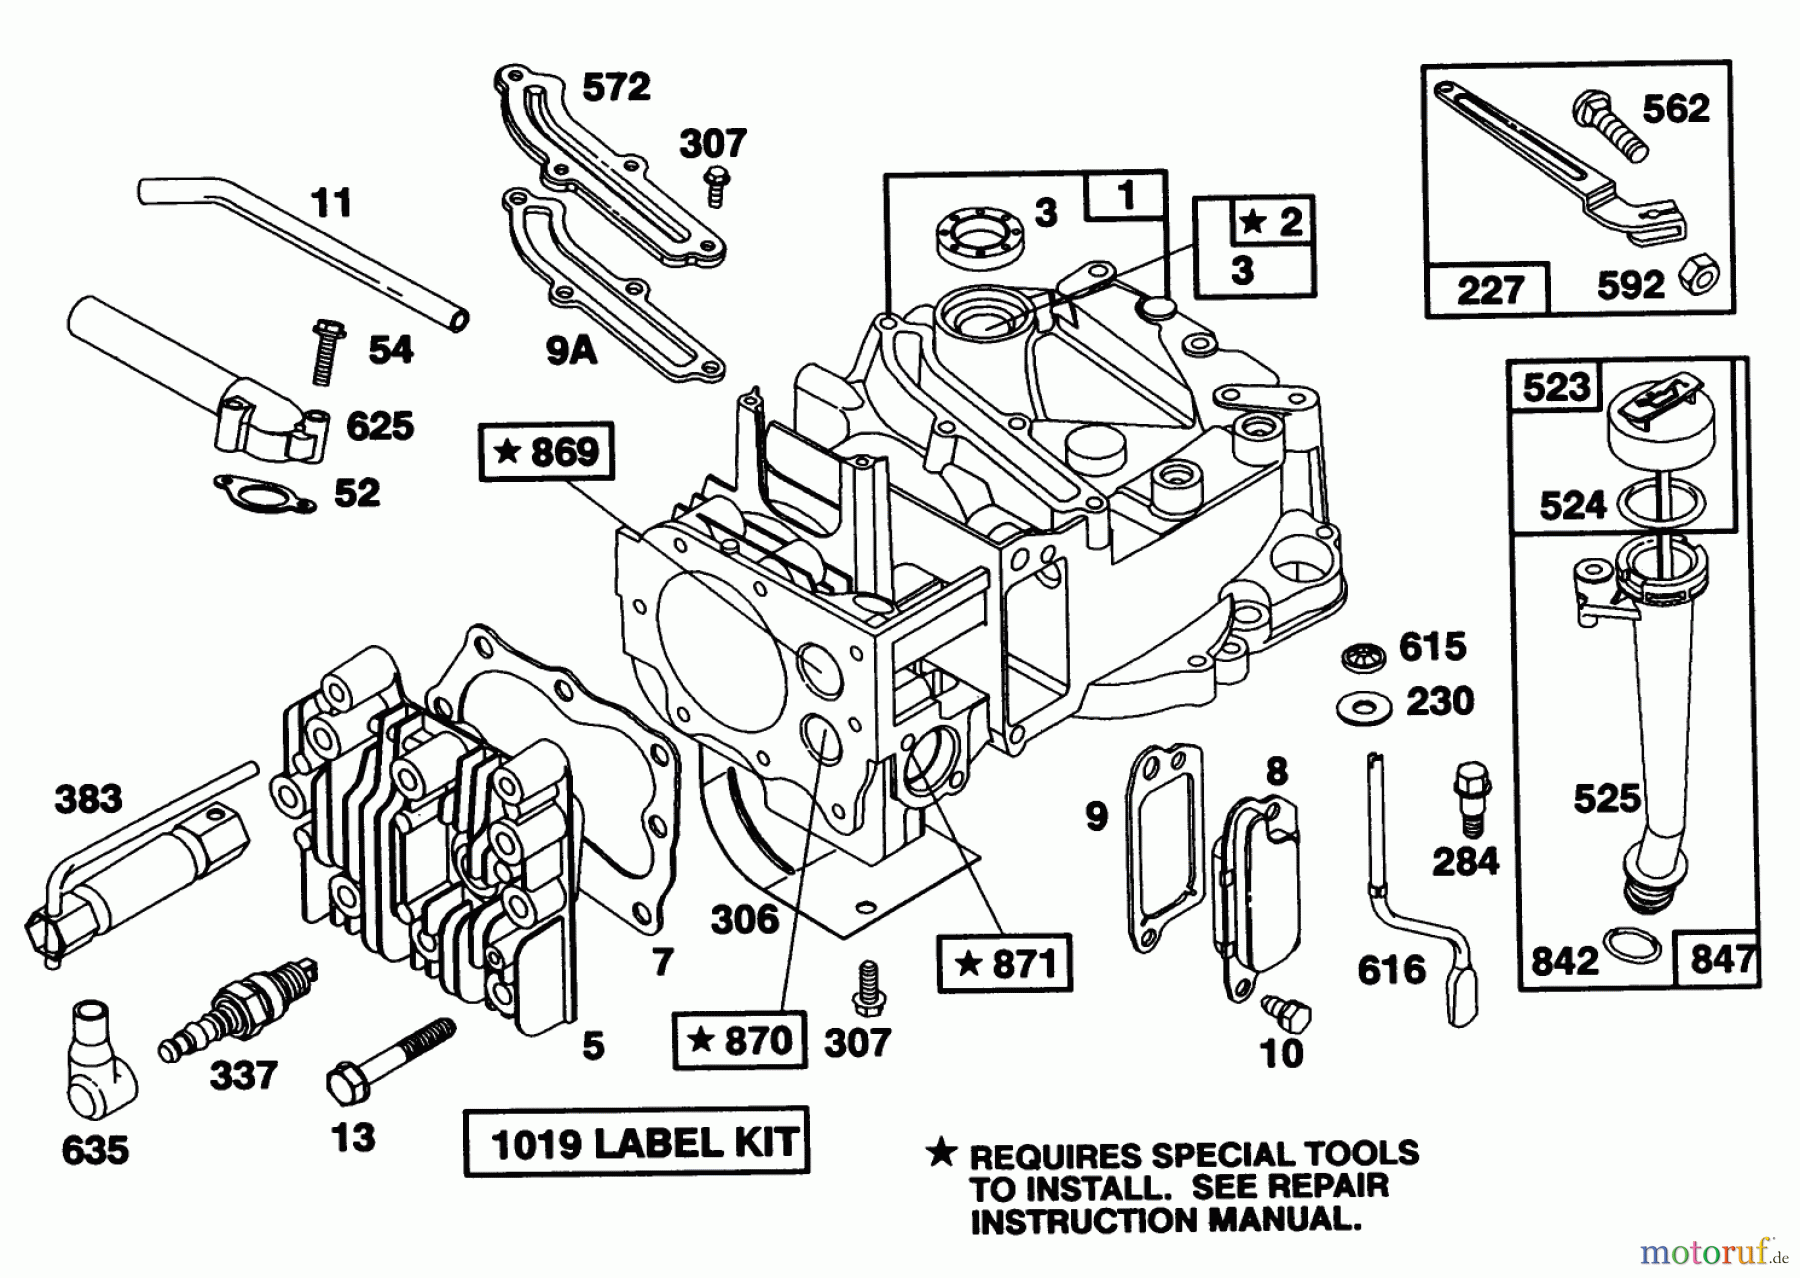  Toro Neu Mowers, Walk-Behind Seite 1 20217 - Toro Lawnmower, 1991 (1000001-1999999) ENGINE RIGGS & STRATTON MODEL 124702-3115-01 #1